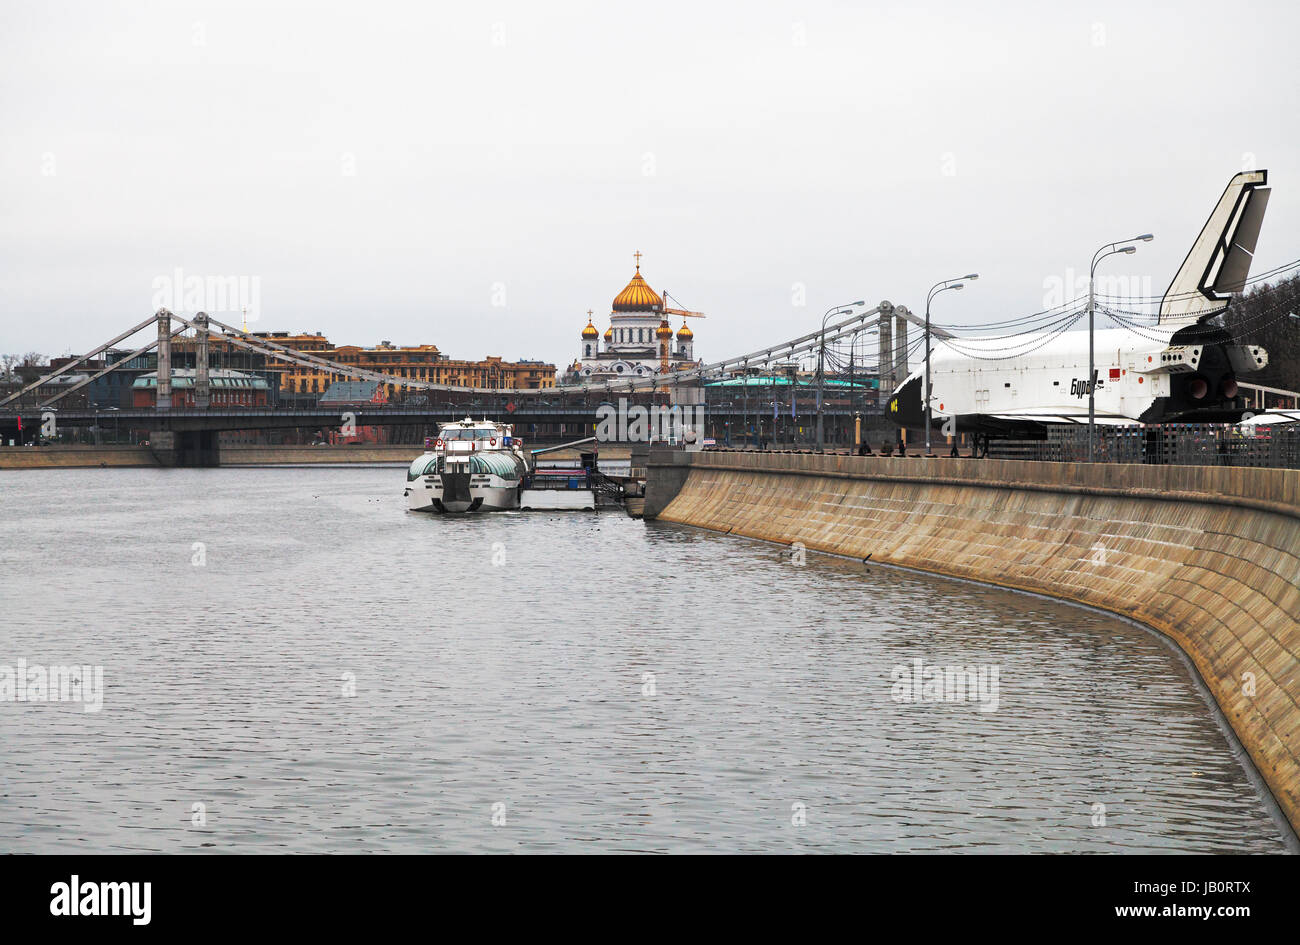 Moscou, Russie - 2 janvier, 2014 : avis de Pushkinskaya (Pouchkine) quai de la rivière Moskva, Bourane engin dans Central Park Gorki, Krymsky (Tatars) Bridge et de la Cathédrale du Christ Sauveur Banque D'Images